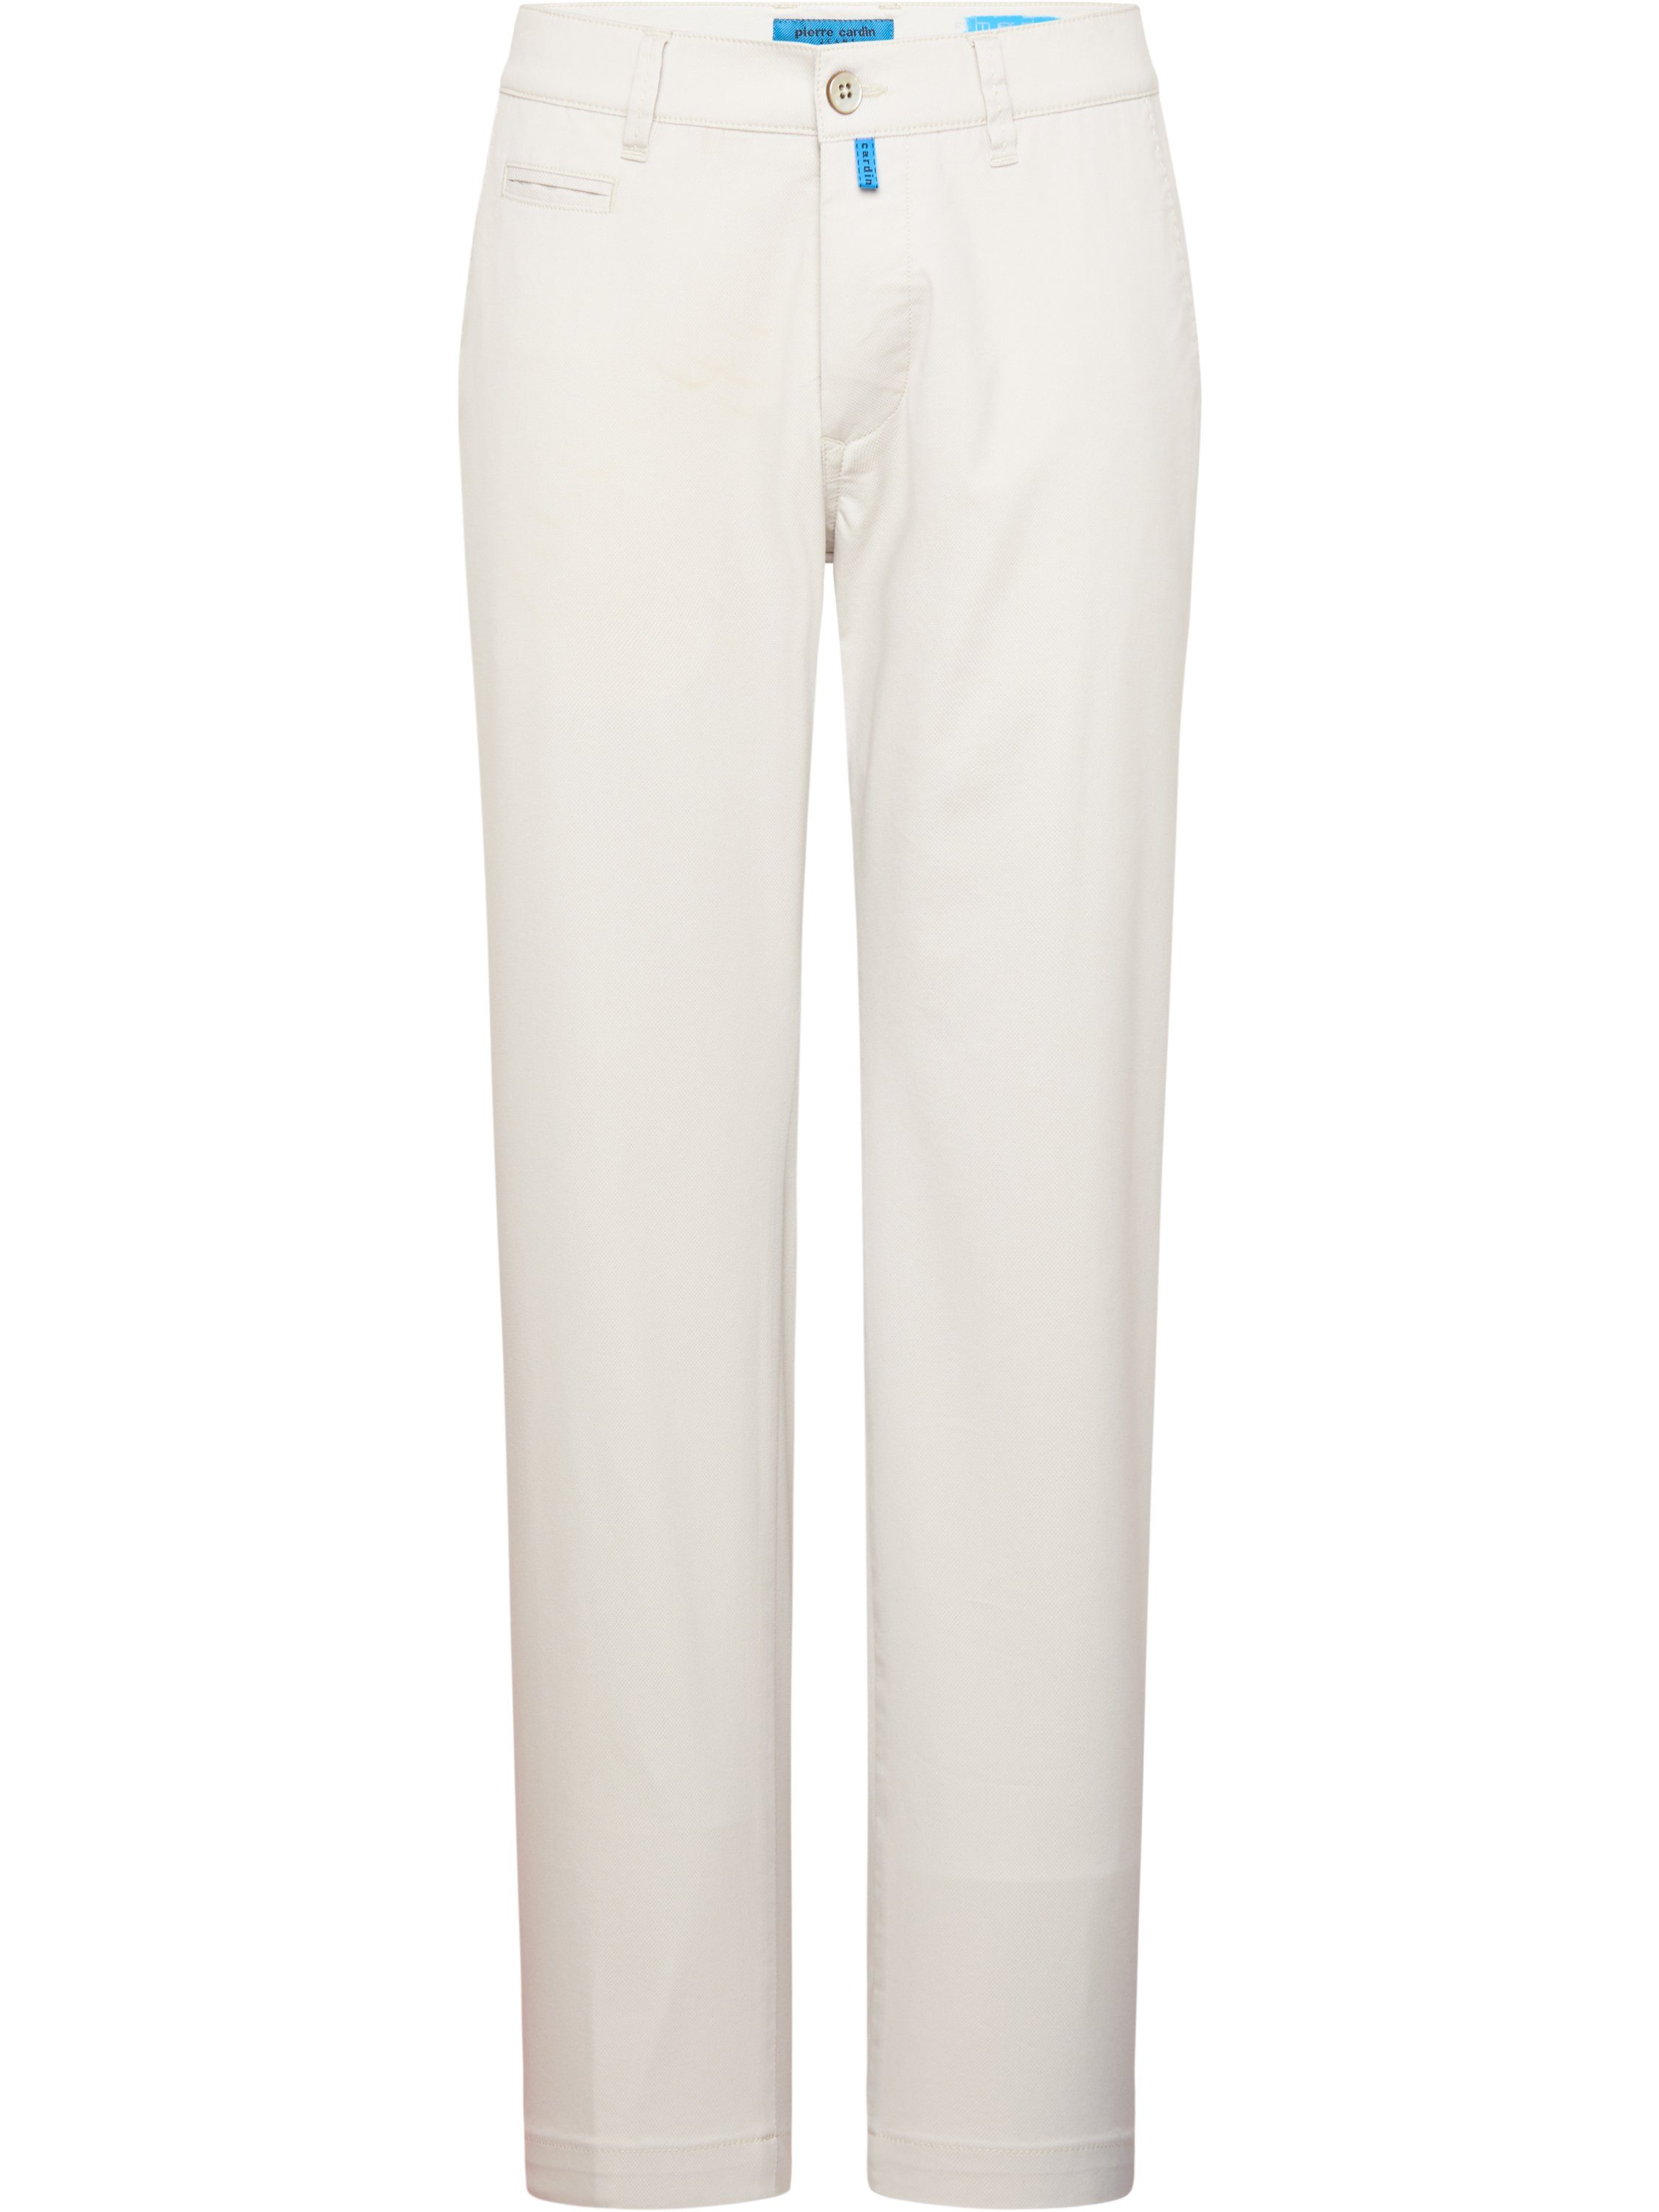 Pierre Cardin 5-Pocket-Jeans PIERRE CARDIN FUTUREFLEX LYON light beige structured 33757 2277.25 25 BEIGE